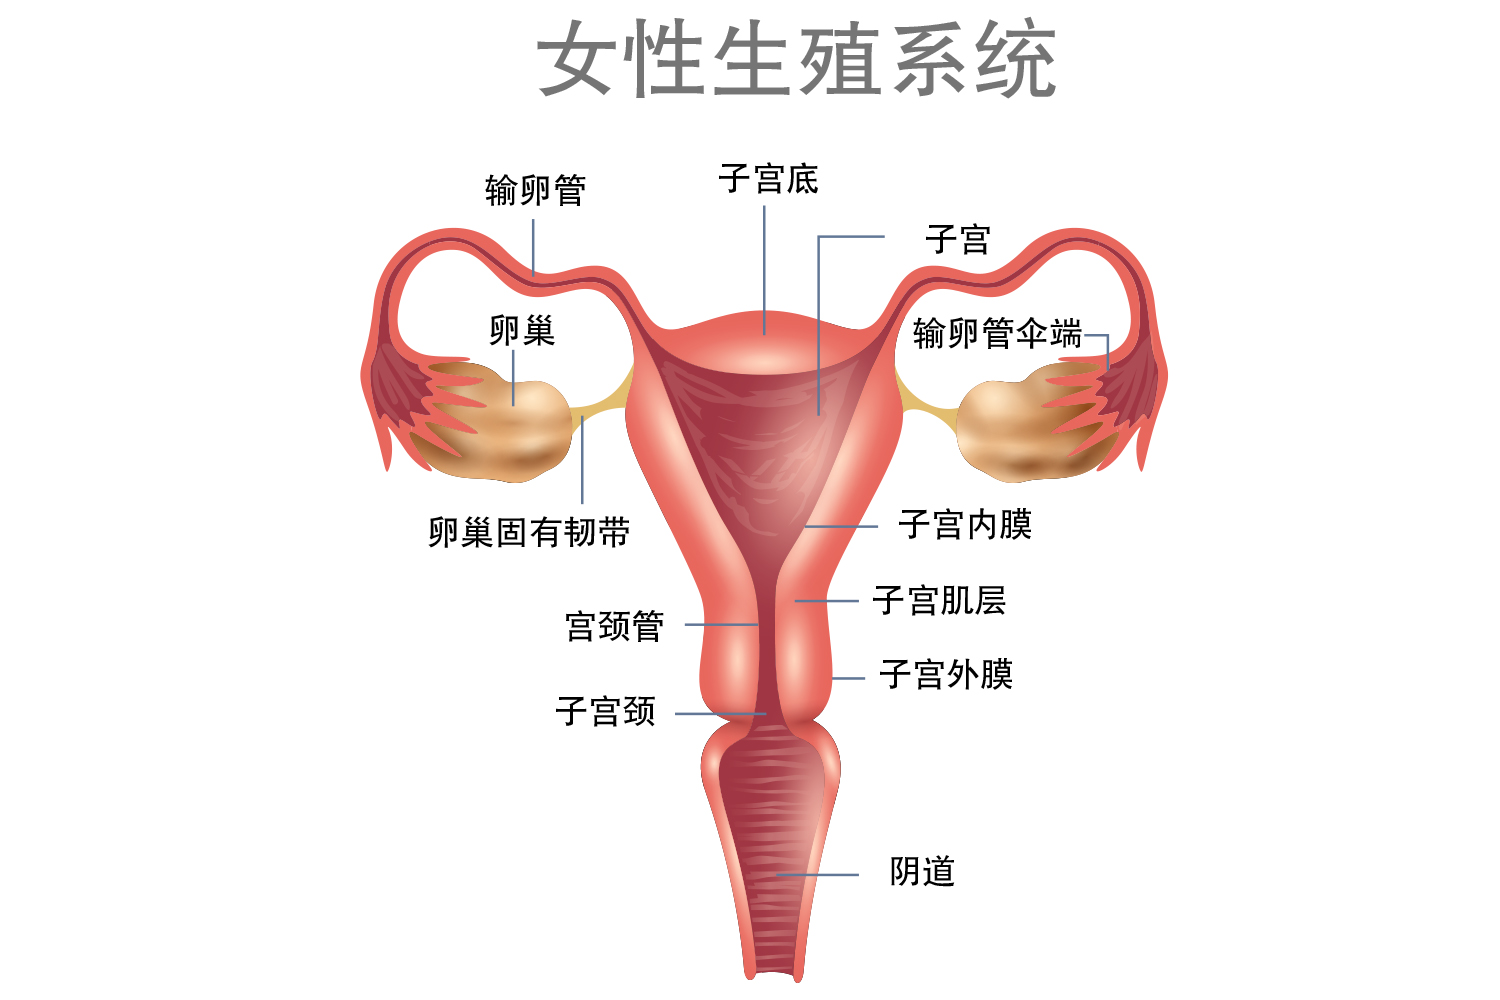 子宫的形态是上部比较宽,下部比较窄,呈倒梨形,最下方连接圆柱状的